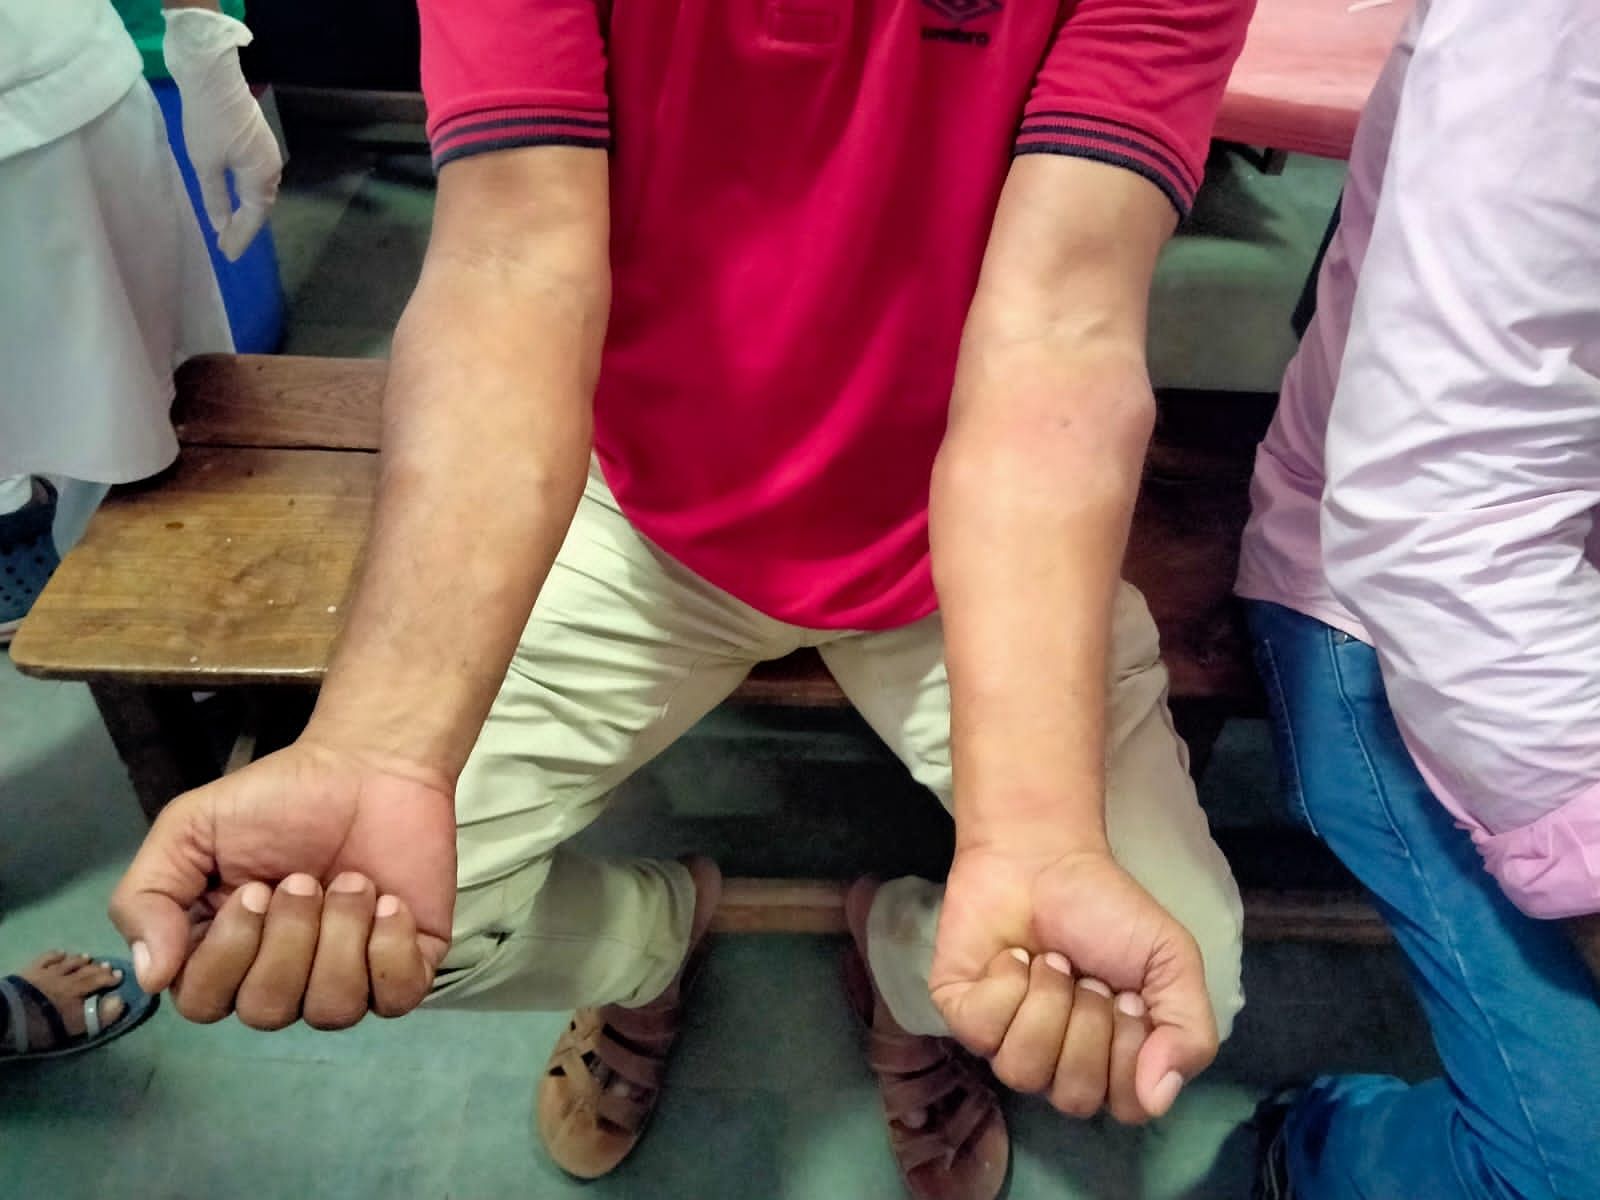 ಹುಬ್ಬಳ್ಳಿ: ಎಸ್ಸೆಸ್ಸೆಲ್ಸಿ ವಿದ್ಯಾರ್ಥಿಗಳು, ಪಾಲಕರ ಮೇಲೆ ಹೆಜ್ಜೇನು ದಾಳಿ